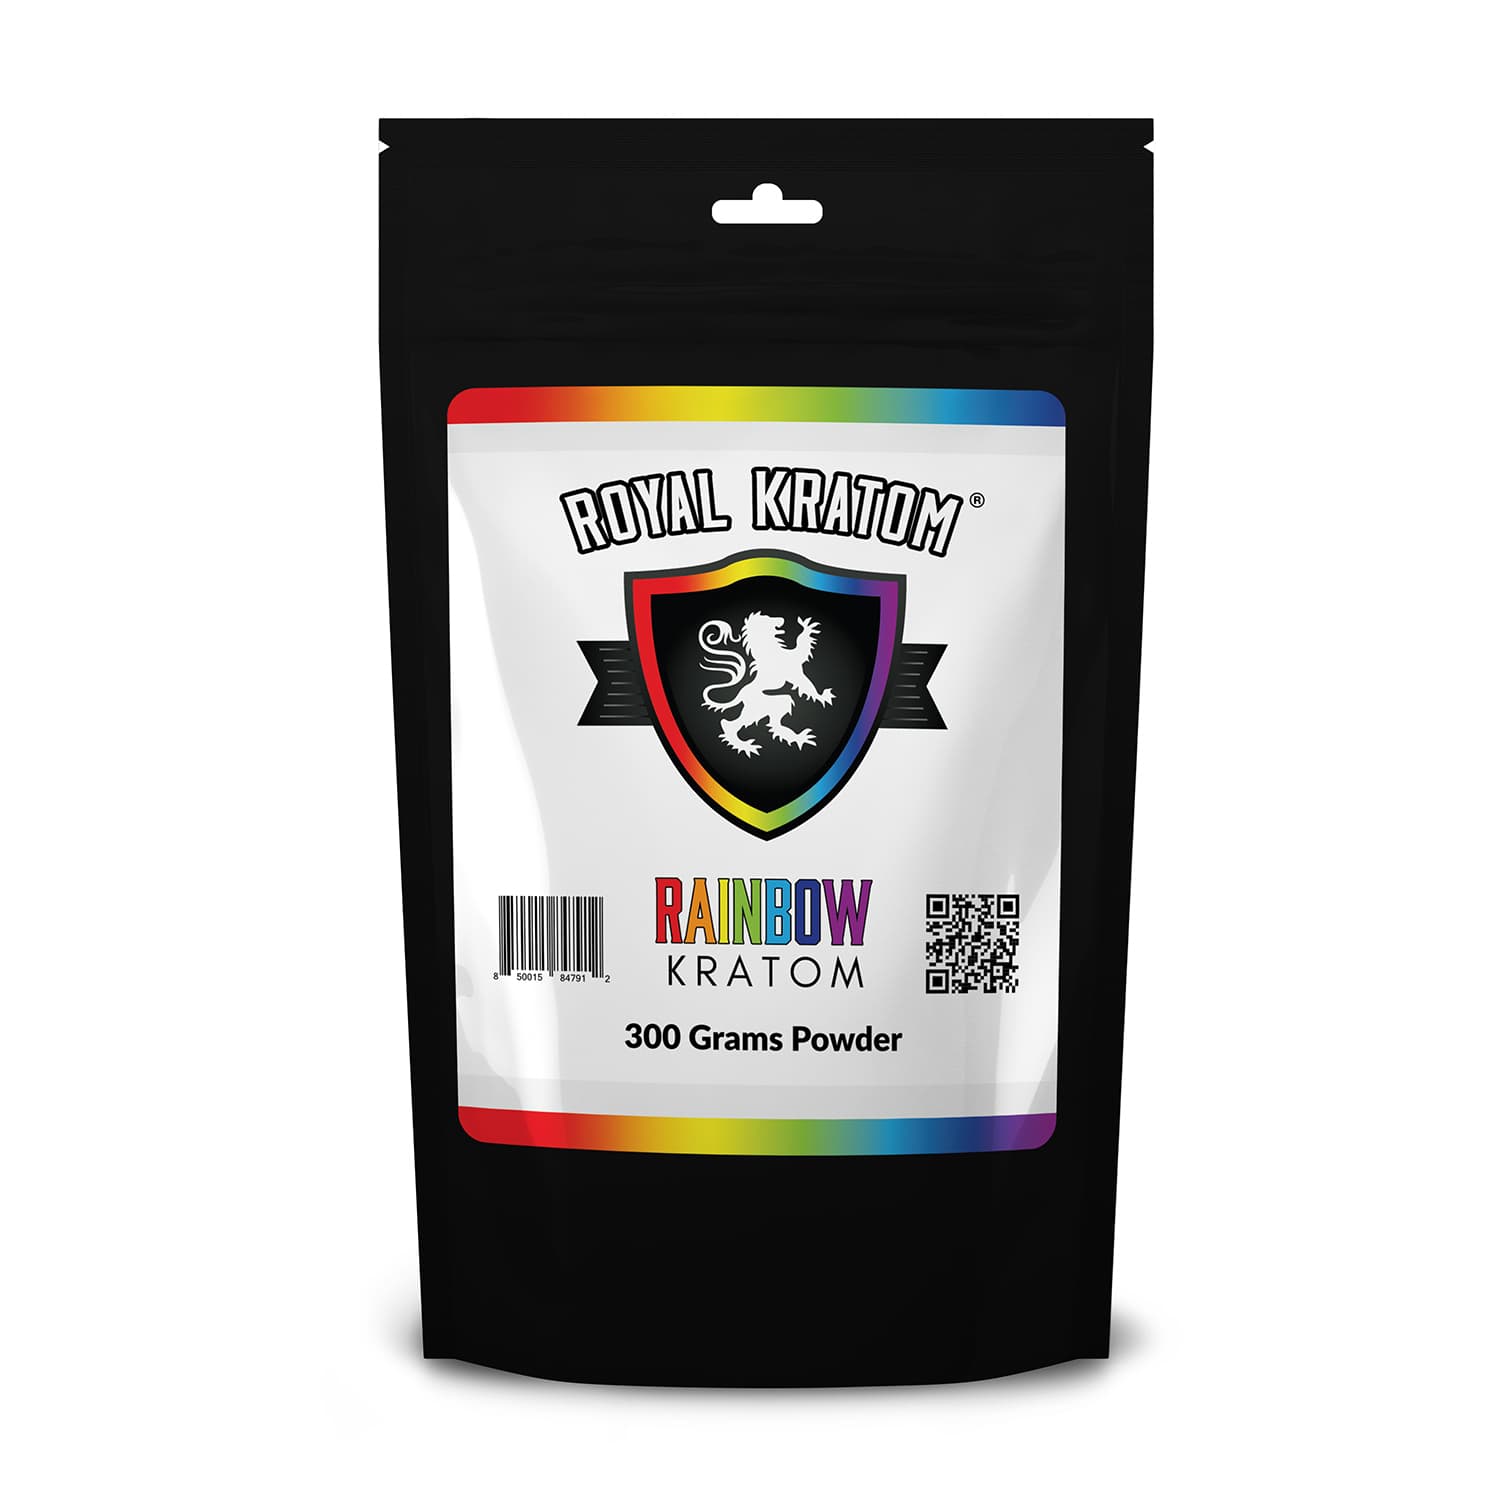 Royal Kratom Rainbow Kratom Blend Powder 300 grams front of package